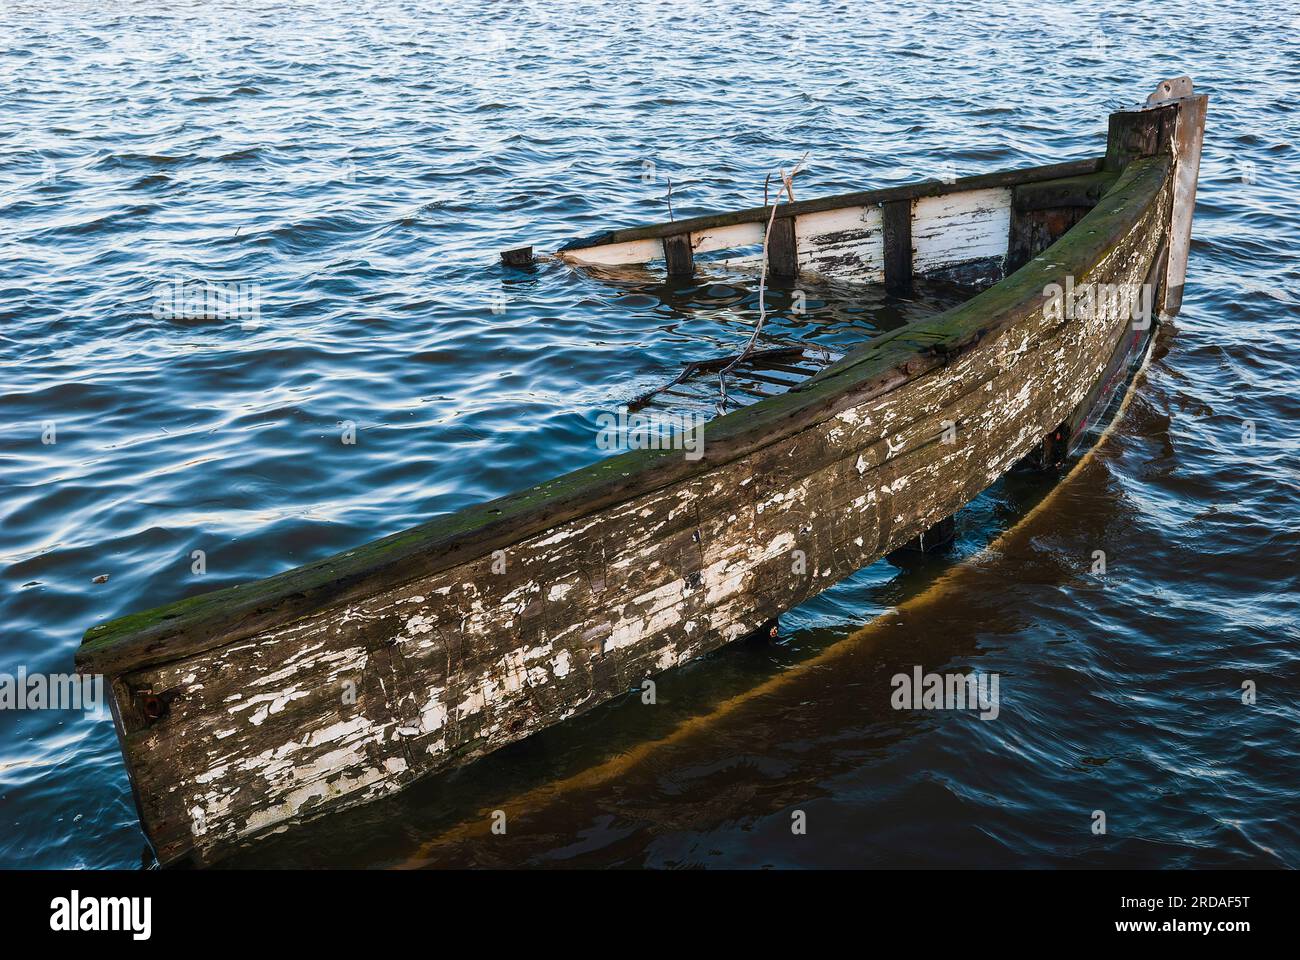 Ein gesunkenes Schiffswrack liegt auf dem Grund eines friedlichen Hafens, dessen Rumpf im sonnigen Meer schimmert. Stockfoto